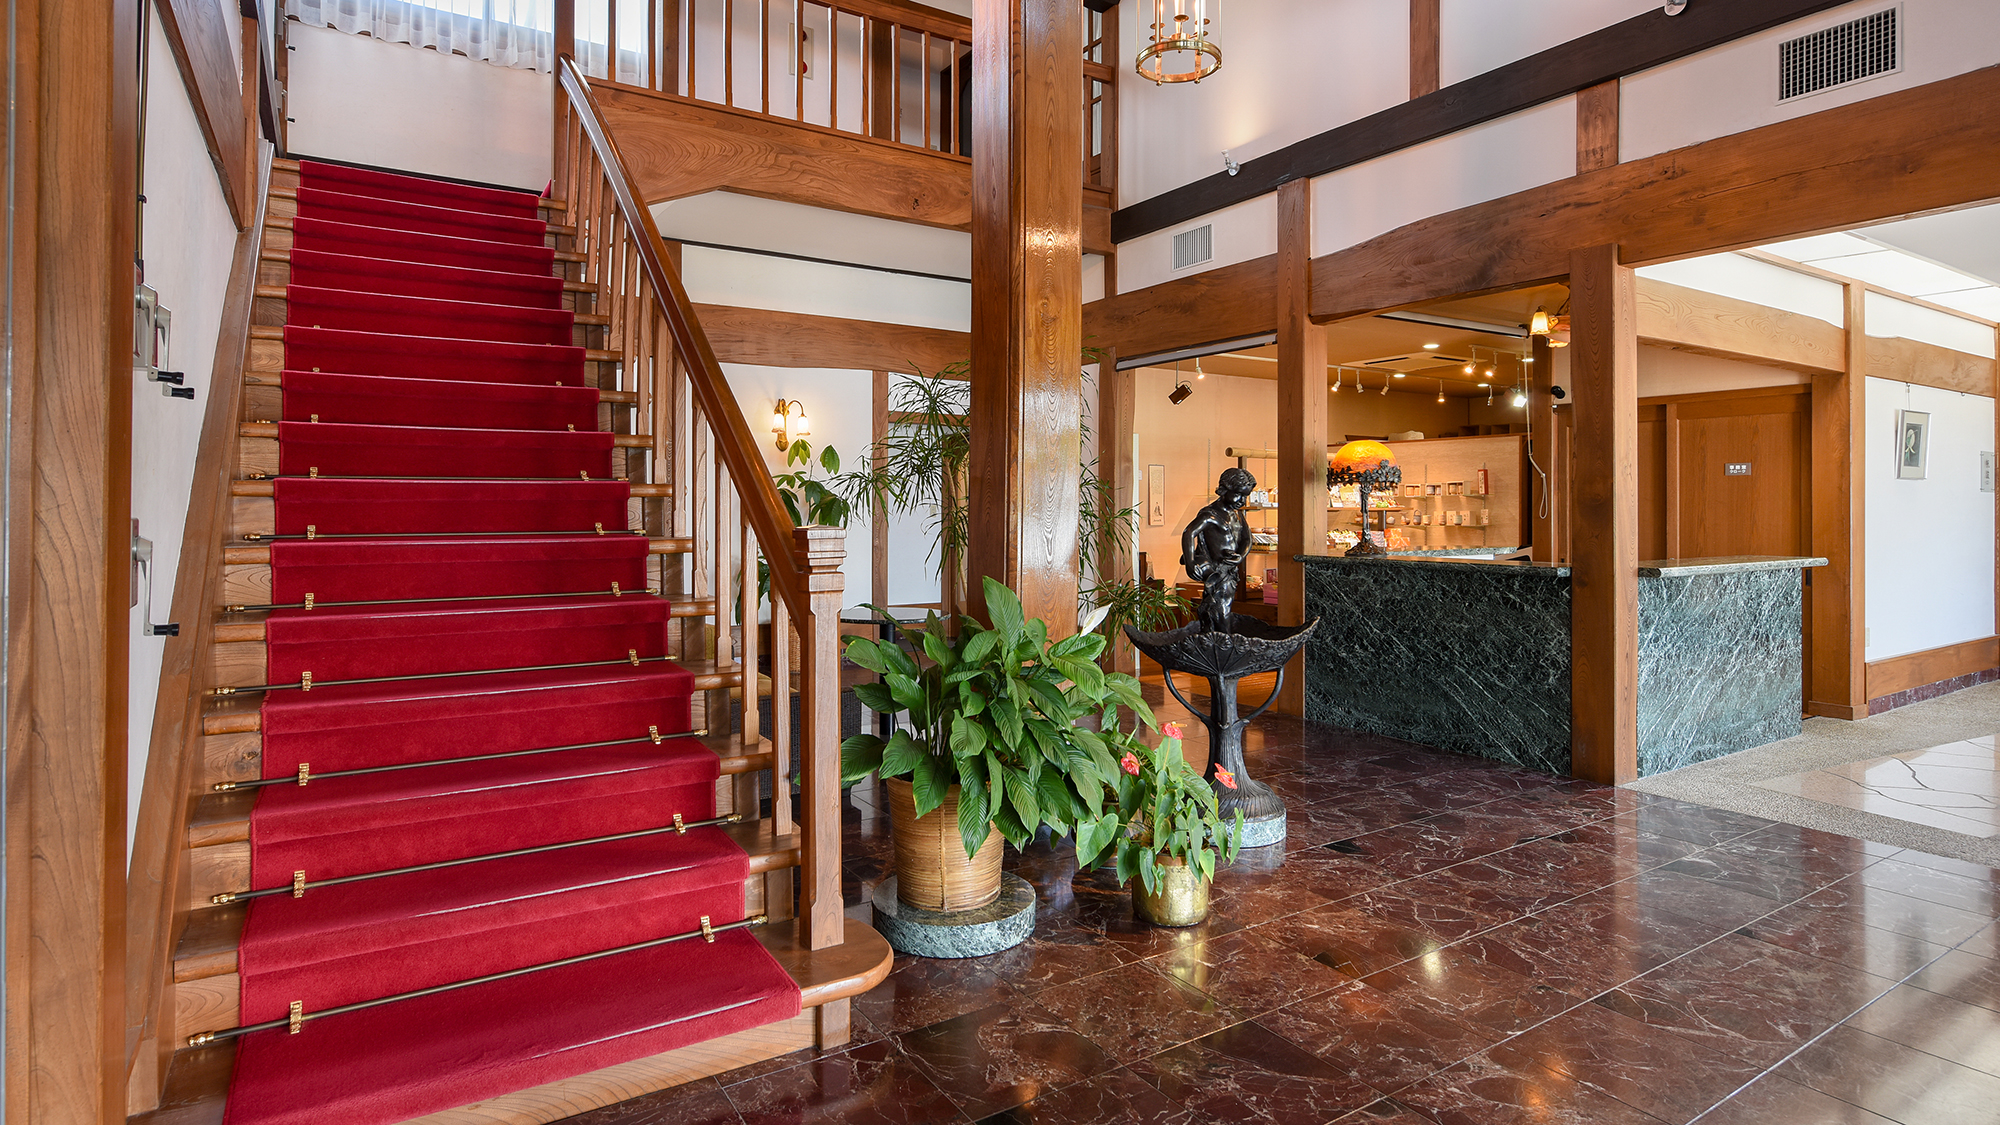 【フロント・ロビー】欅造りのロビー。2階へと続く赤い絨毯の階段が印象的。